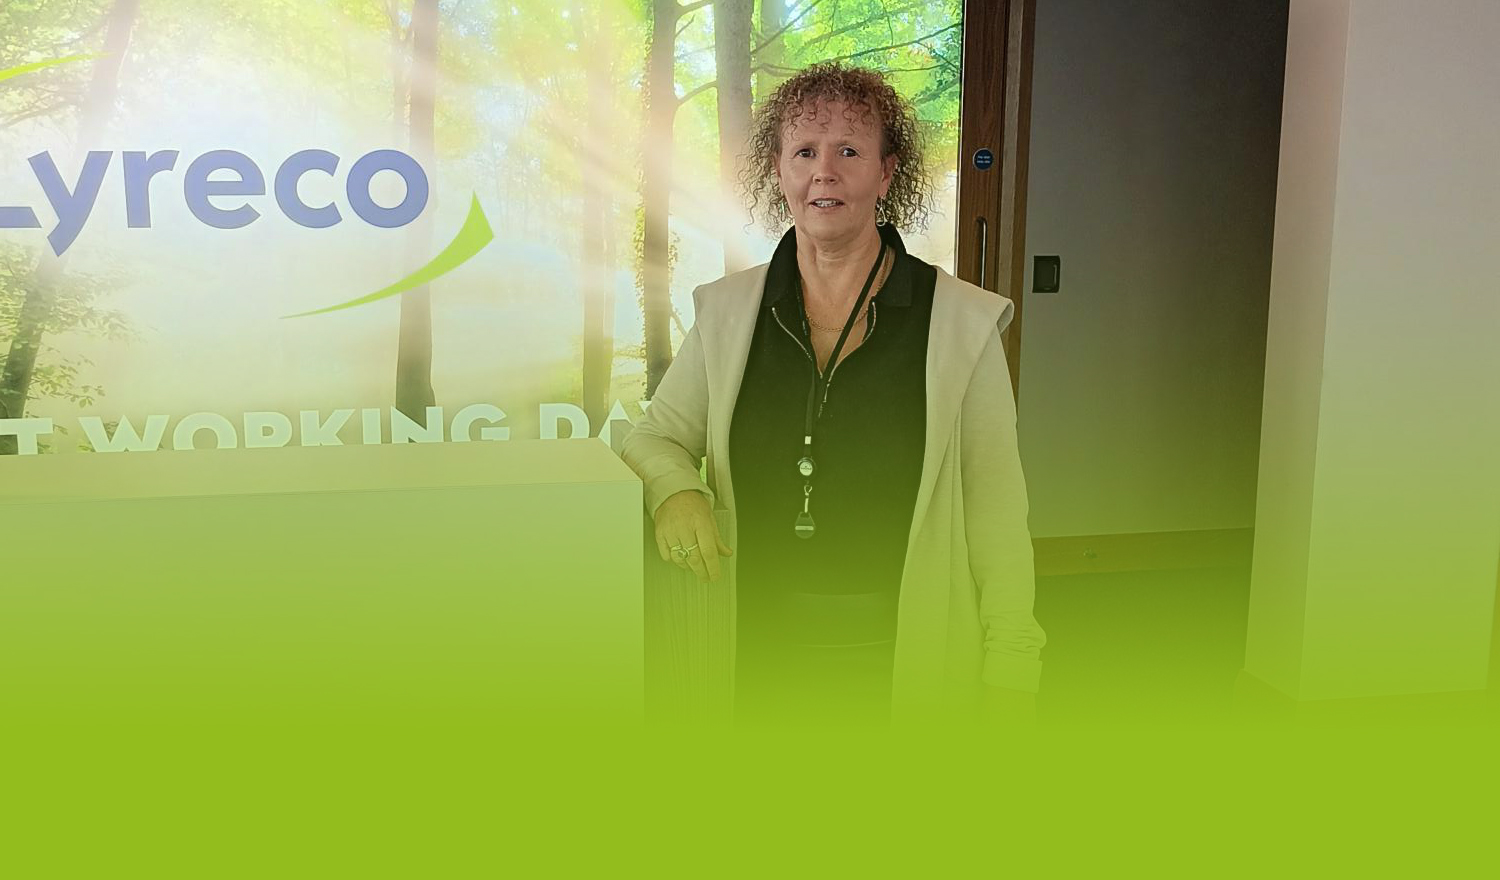 Introducing Eileen Kinch to Lyreco UK & Ireland